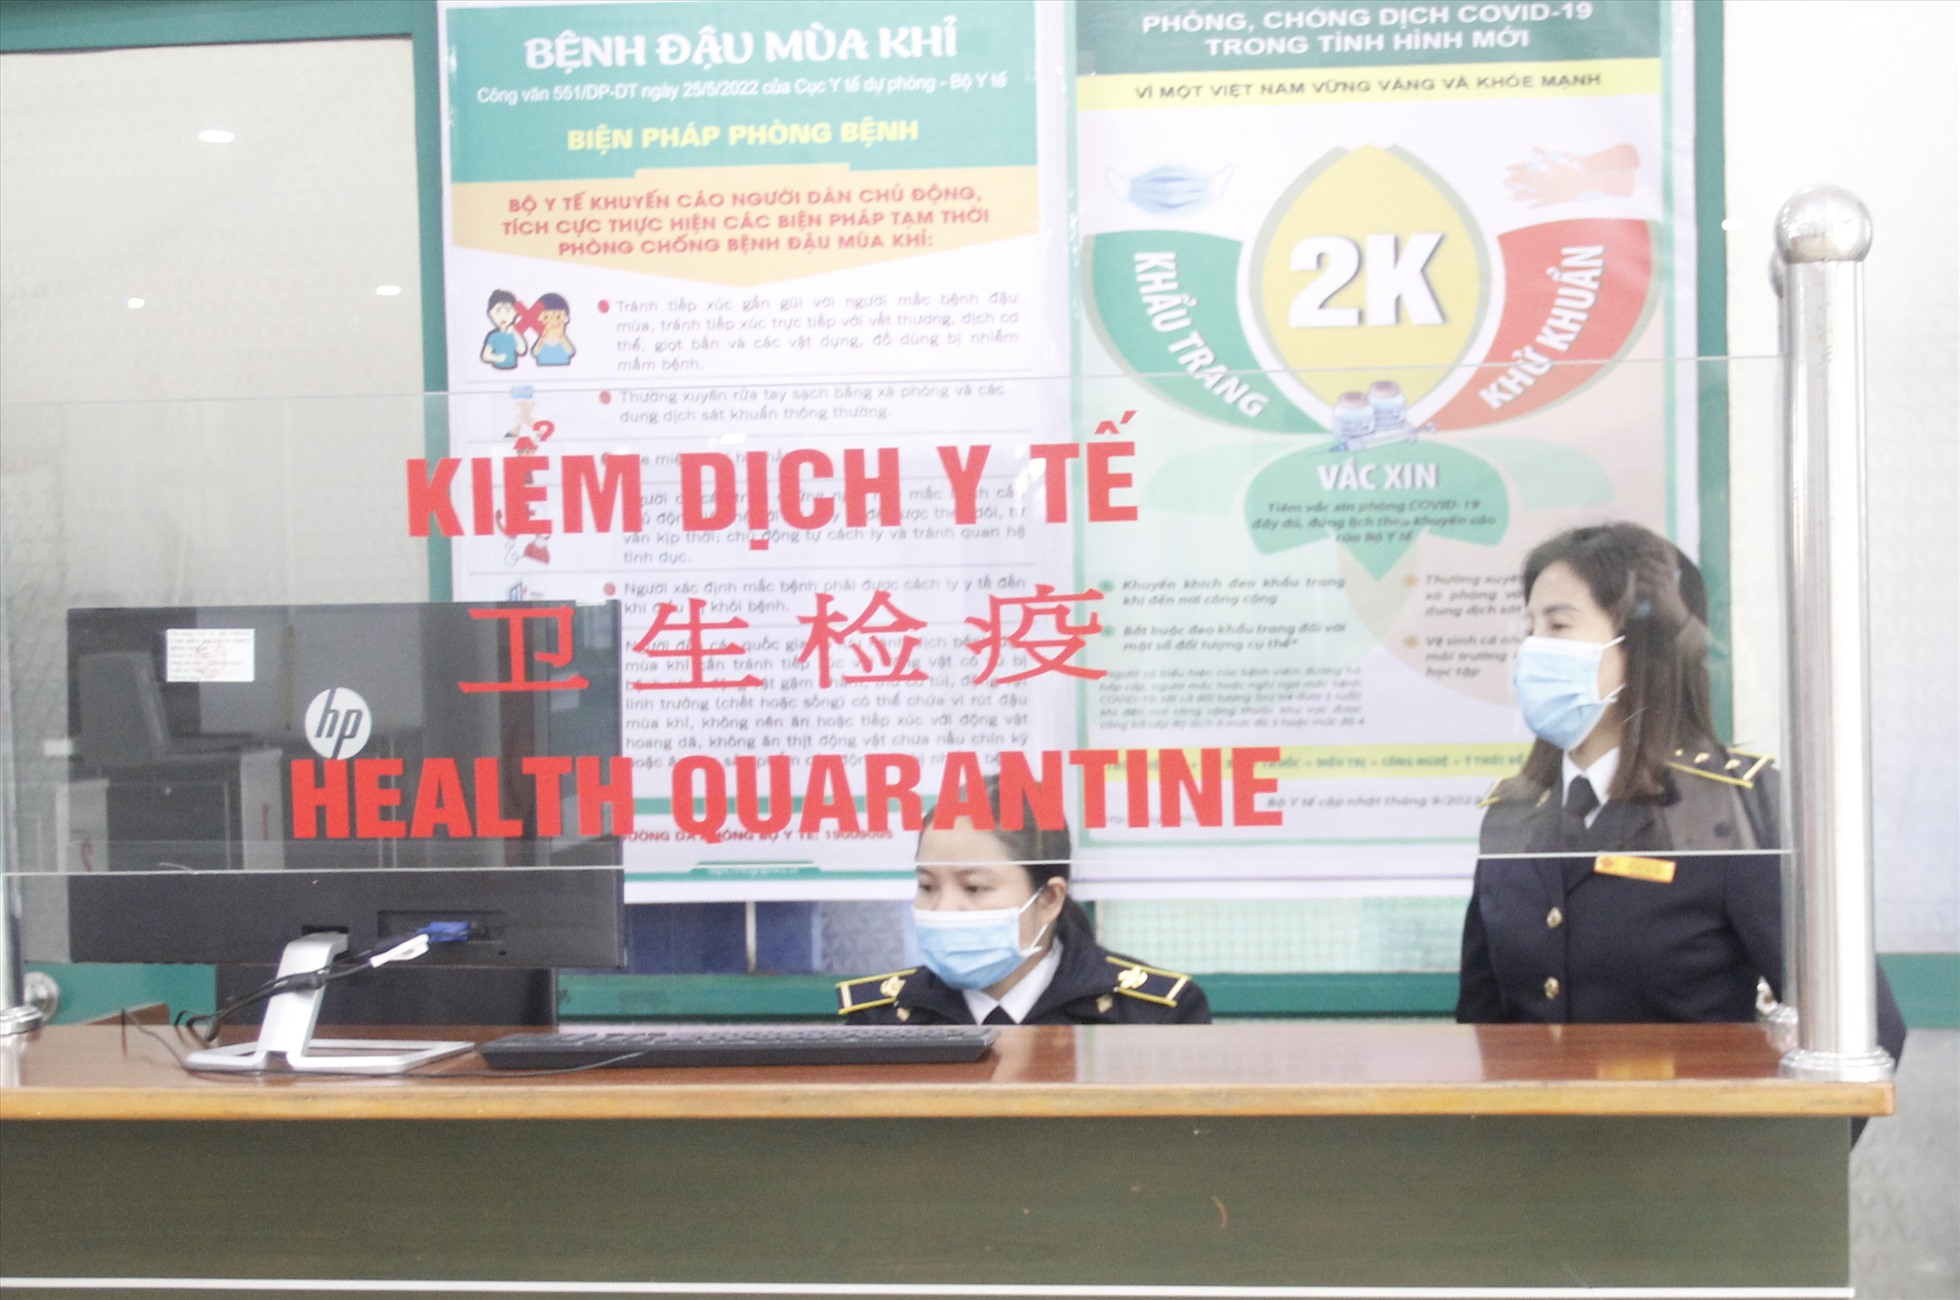 Ông Lục Hậu Giang - Phó giám đốc Sở Y tế tỉnh Lào Cai cho biết, tỉnh sẽ tiếp tục thực hiện các biện pháp phòng chống dịch với 3 trụ cột là: cách ly, xét nghiệm, điều trị theo công thức 2K.